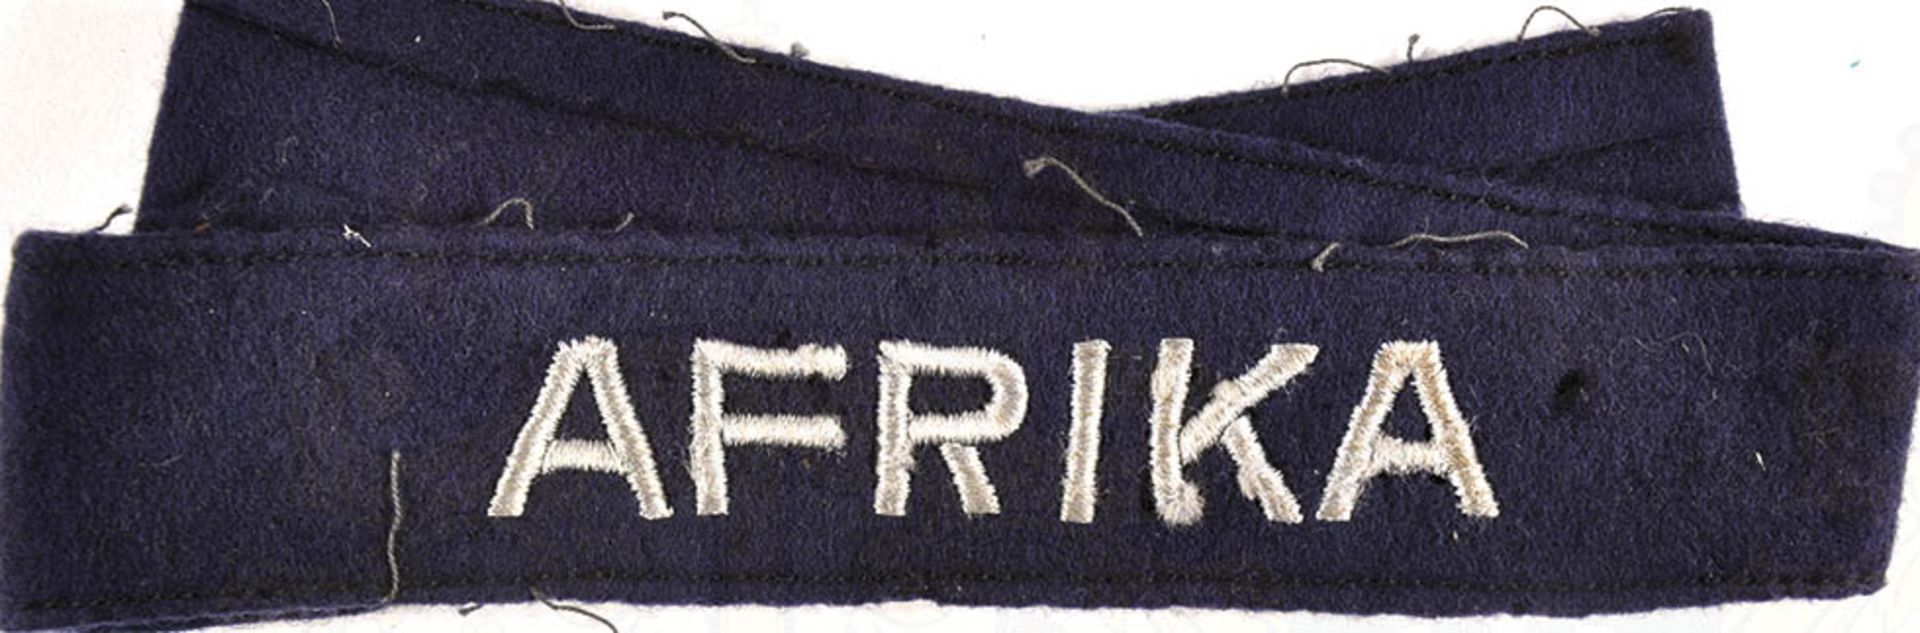 ÄRMELBAND "AFRIKA", (Zugehörigkeitsband f. LW-Angehörige), dunkelblaues Tuch m. silbergrauer